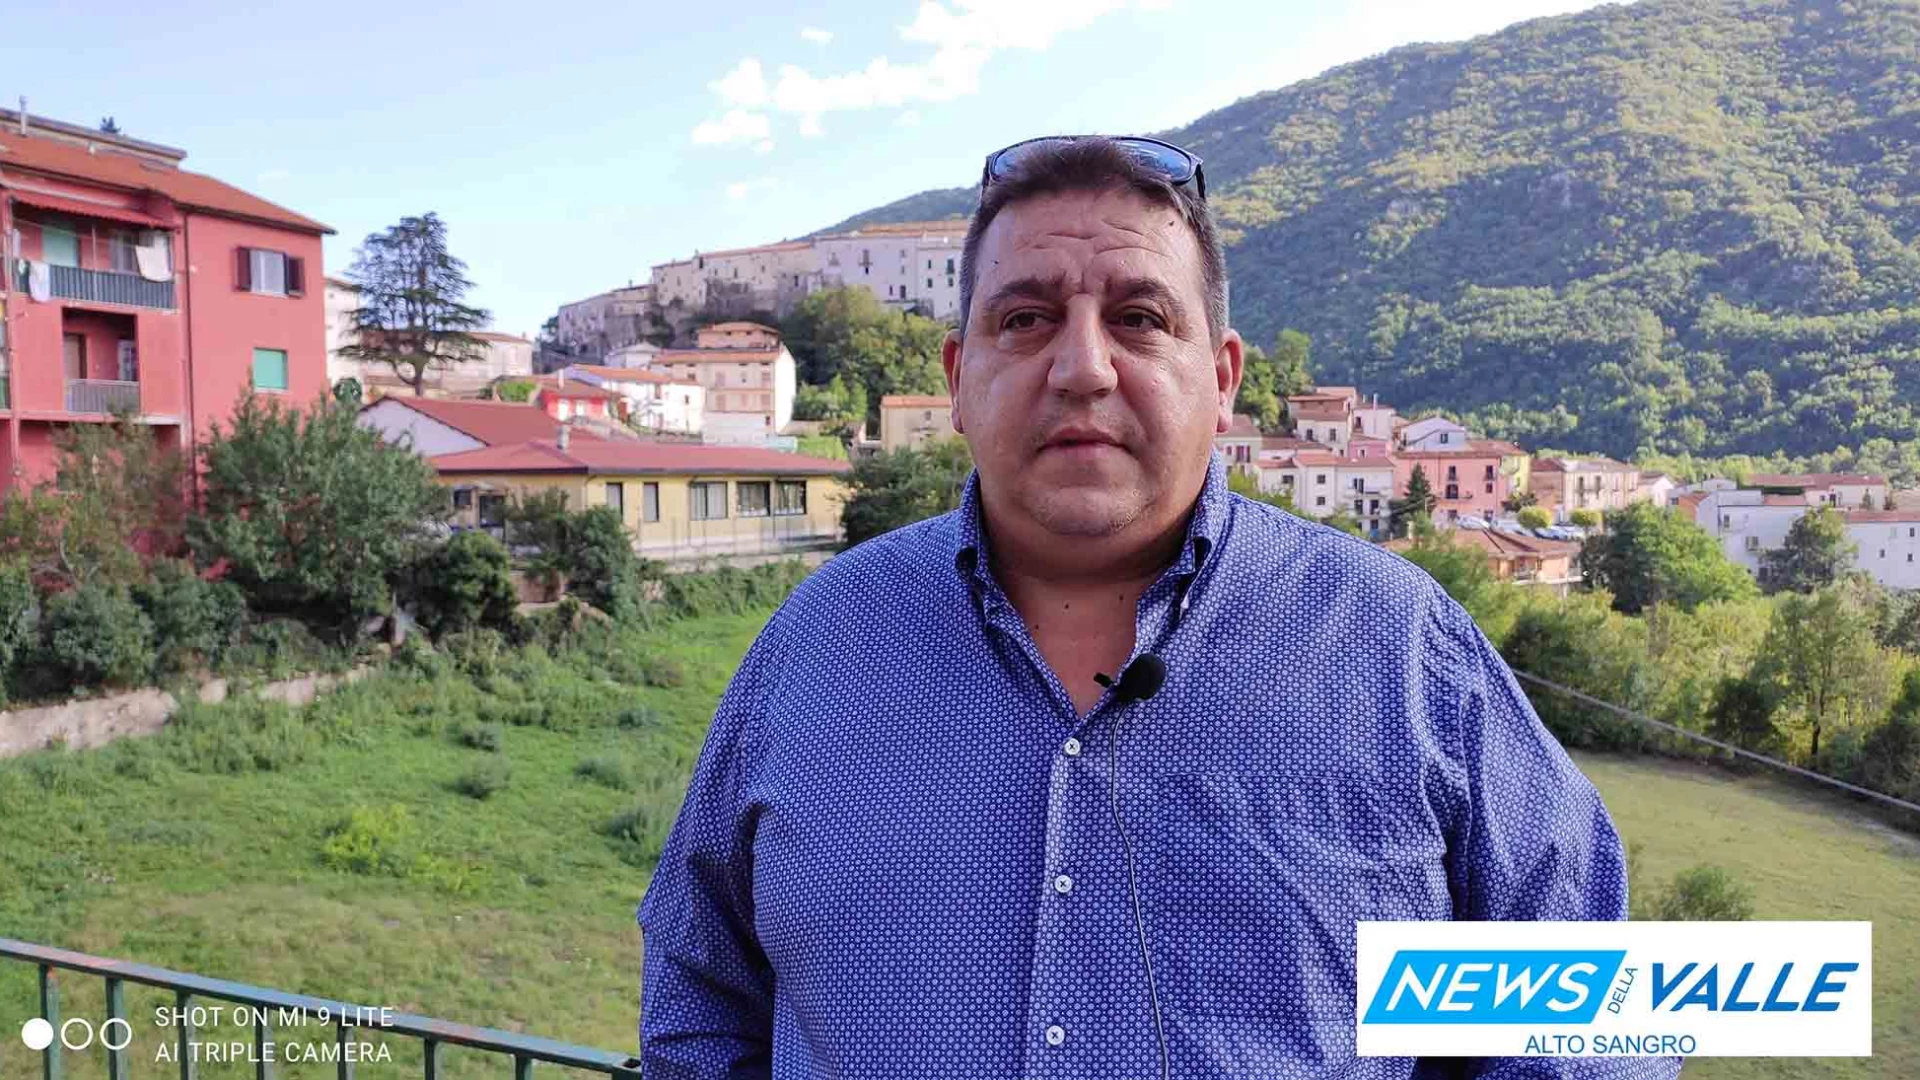 Spazio elettorale: Antonio Visco chiede agli elettori di votare "molisano". Guarda l'intervista al candidato al Senato con "Noi di Centro" di Mastella